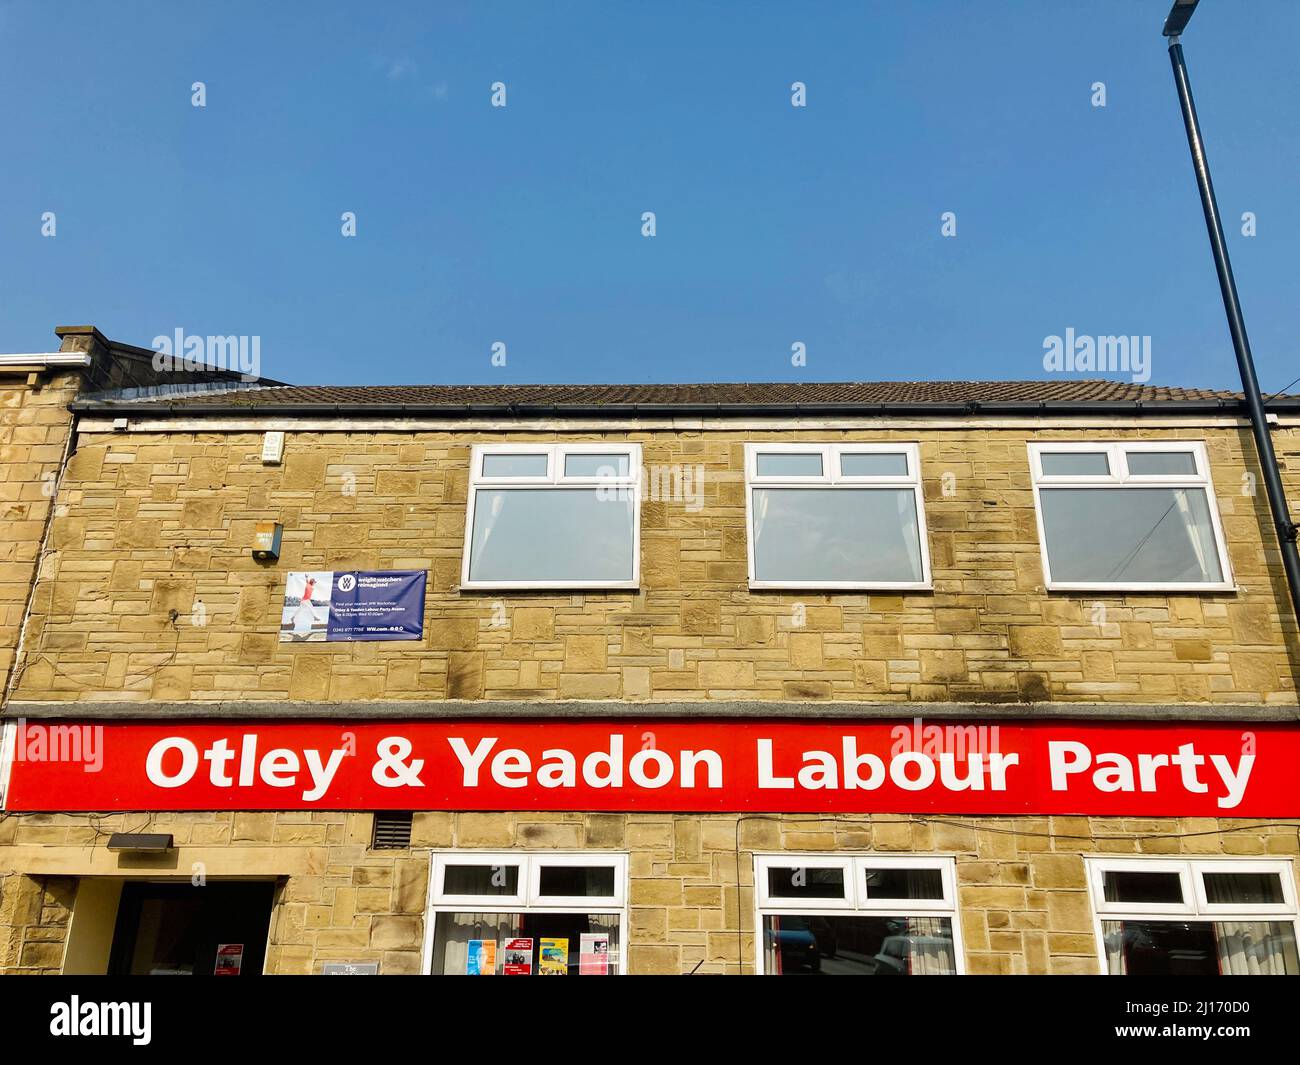 Otley et Yeadon Labor Party, une branche locale du Parti travailliste, une organisation politique au Royaume-Uni. Banque D'Images